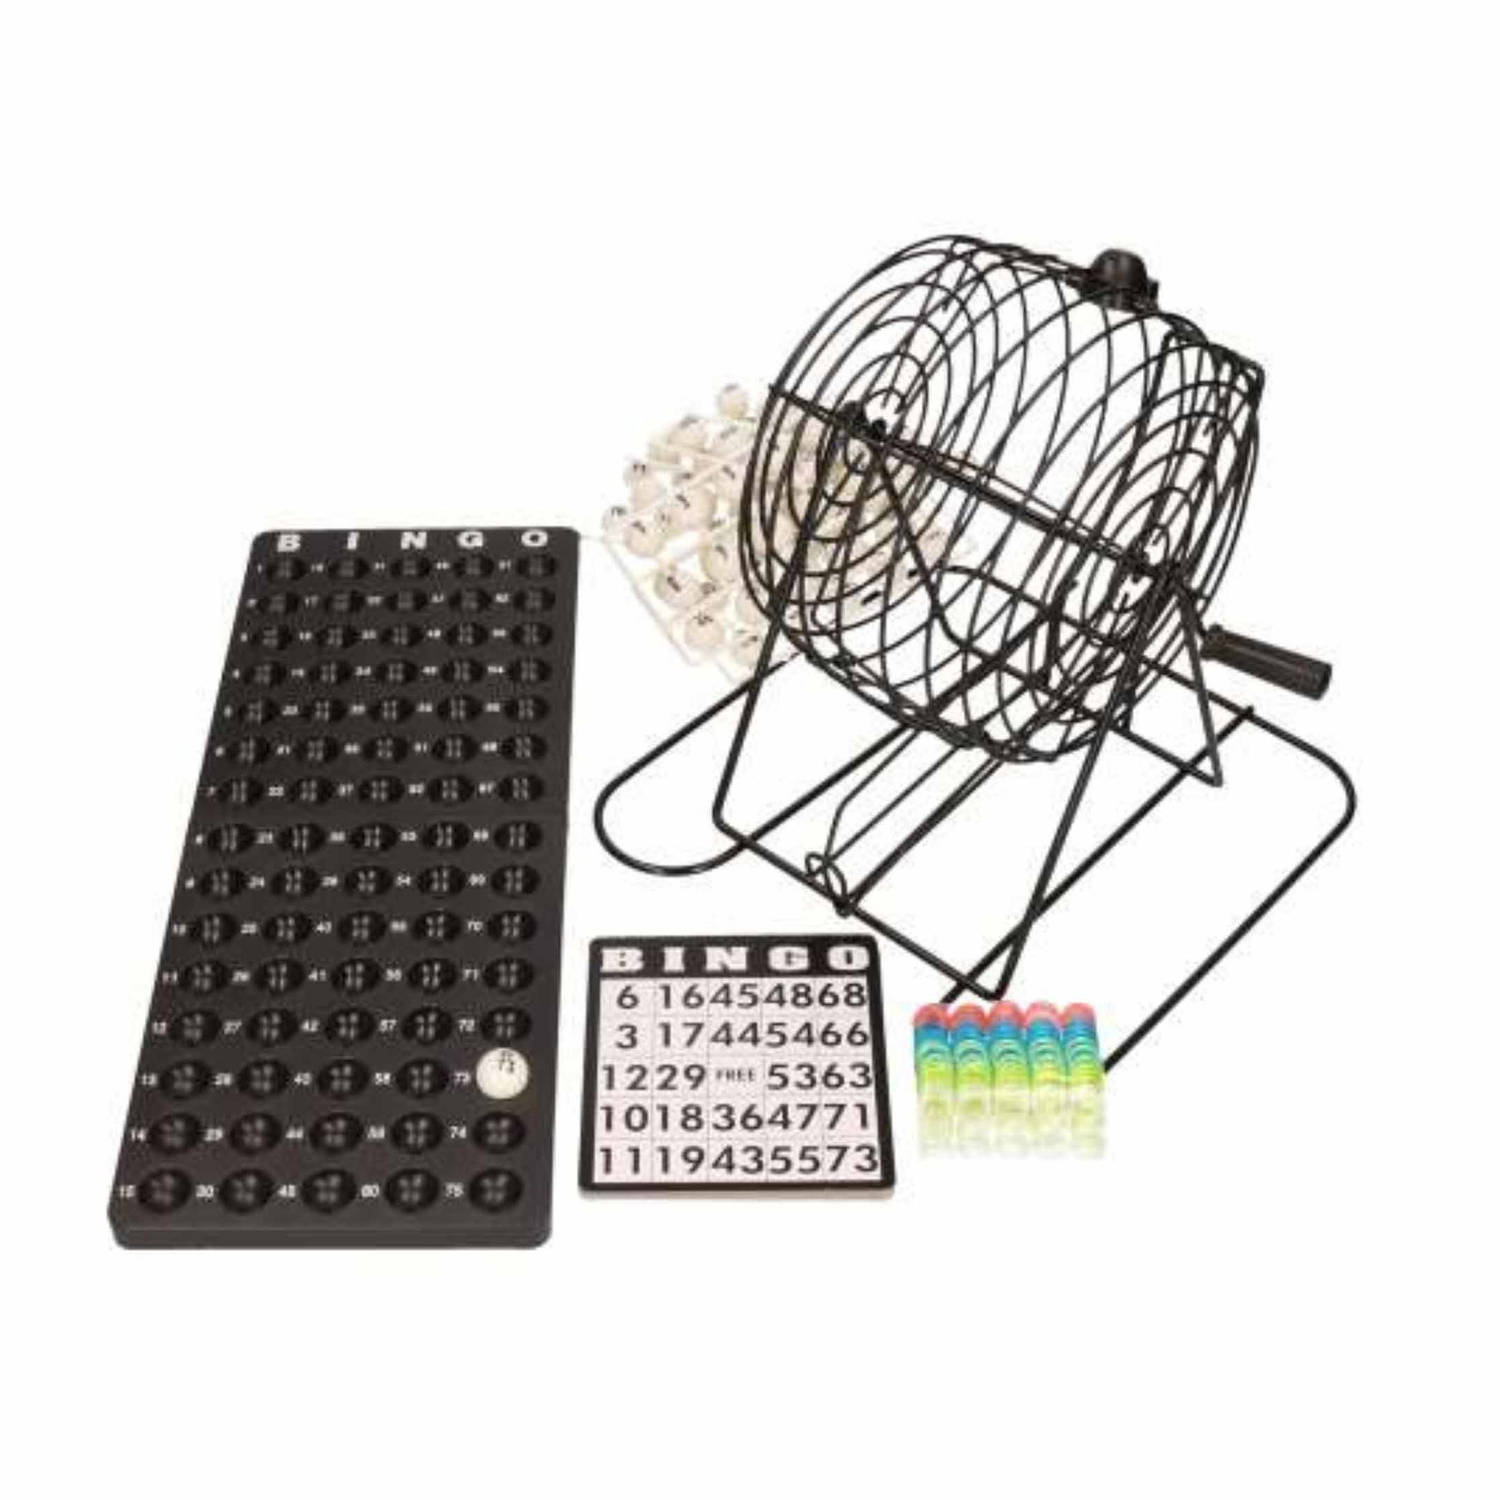 Bingo spel zwart/wit complete cm nummers 1-75 met molen/168x bingokaarten/2x stiften - Kansspelen